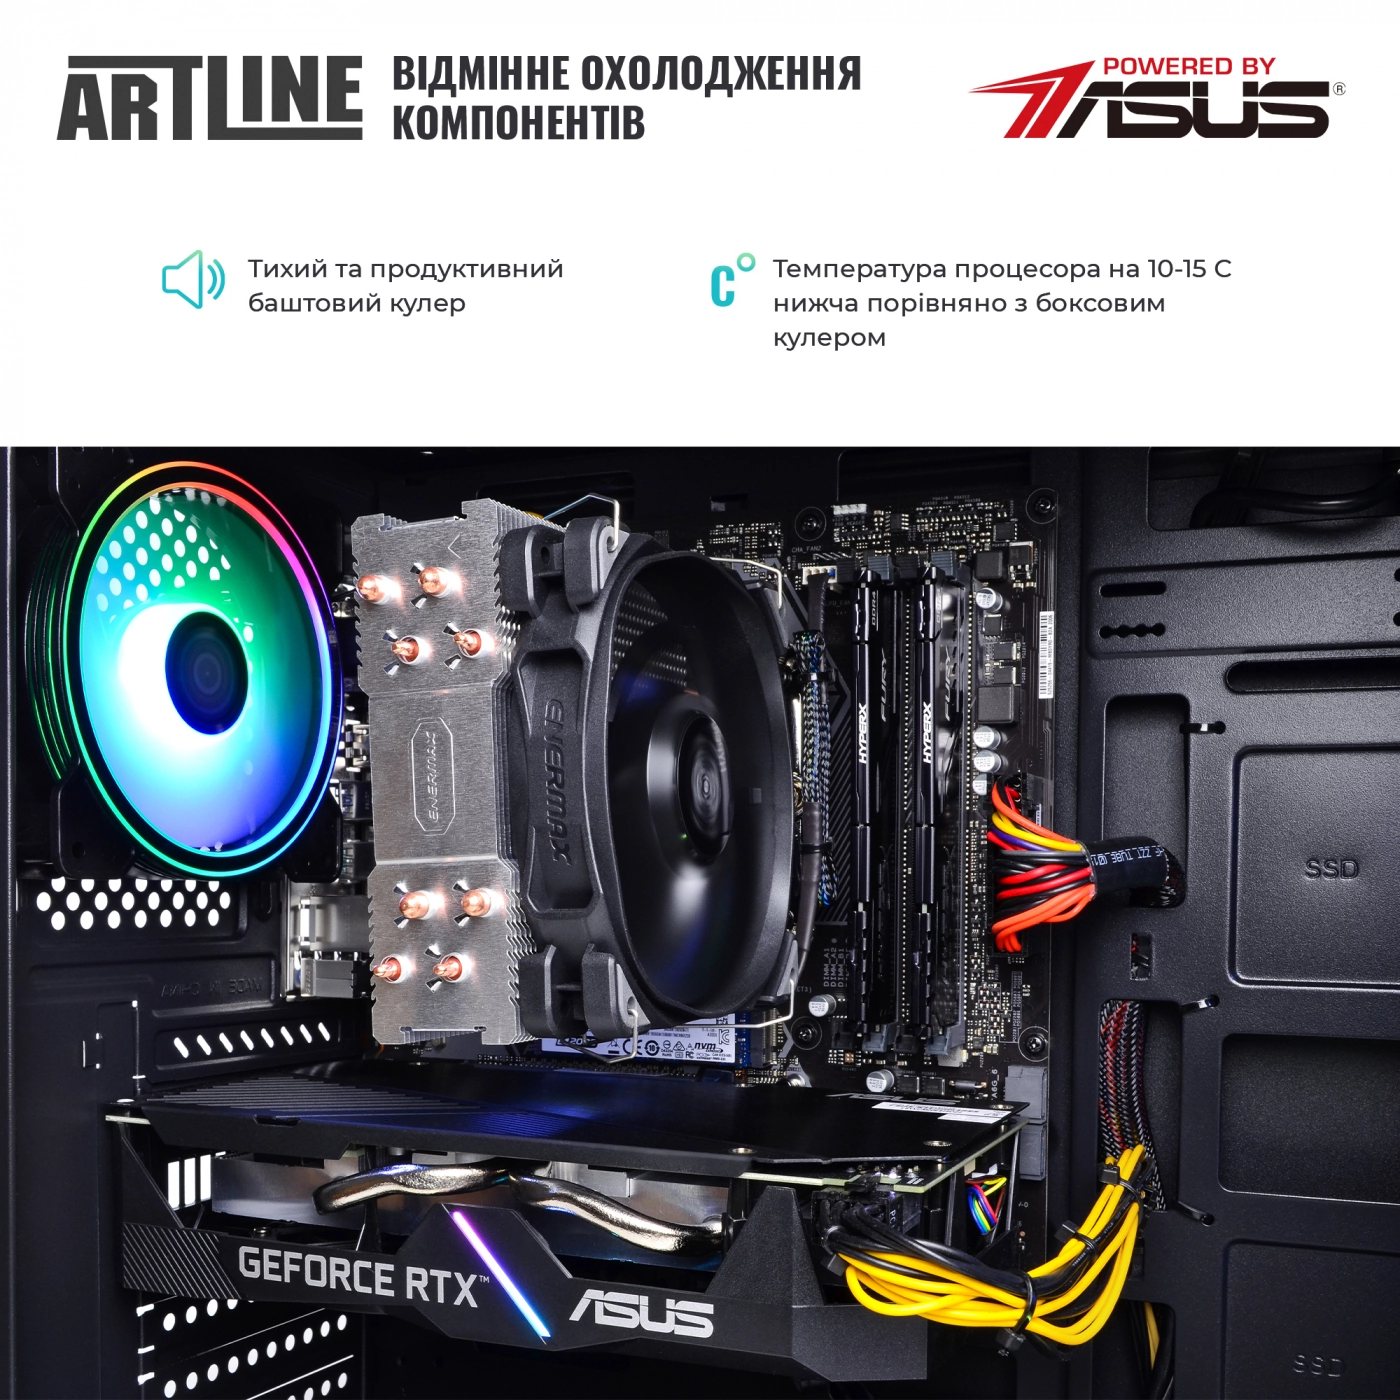 Купить Компьютер ARTLINE Gaming X85v01 - фото 7